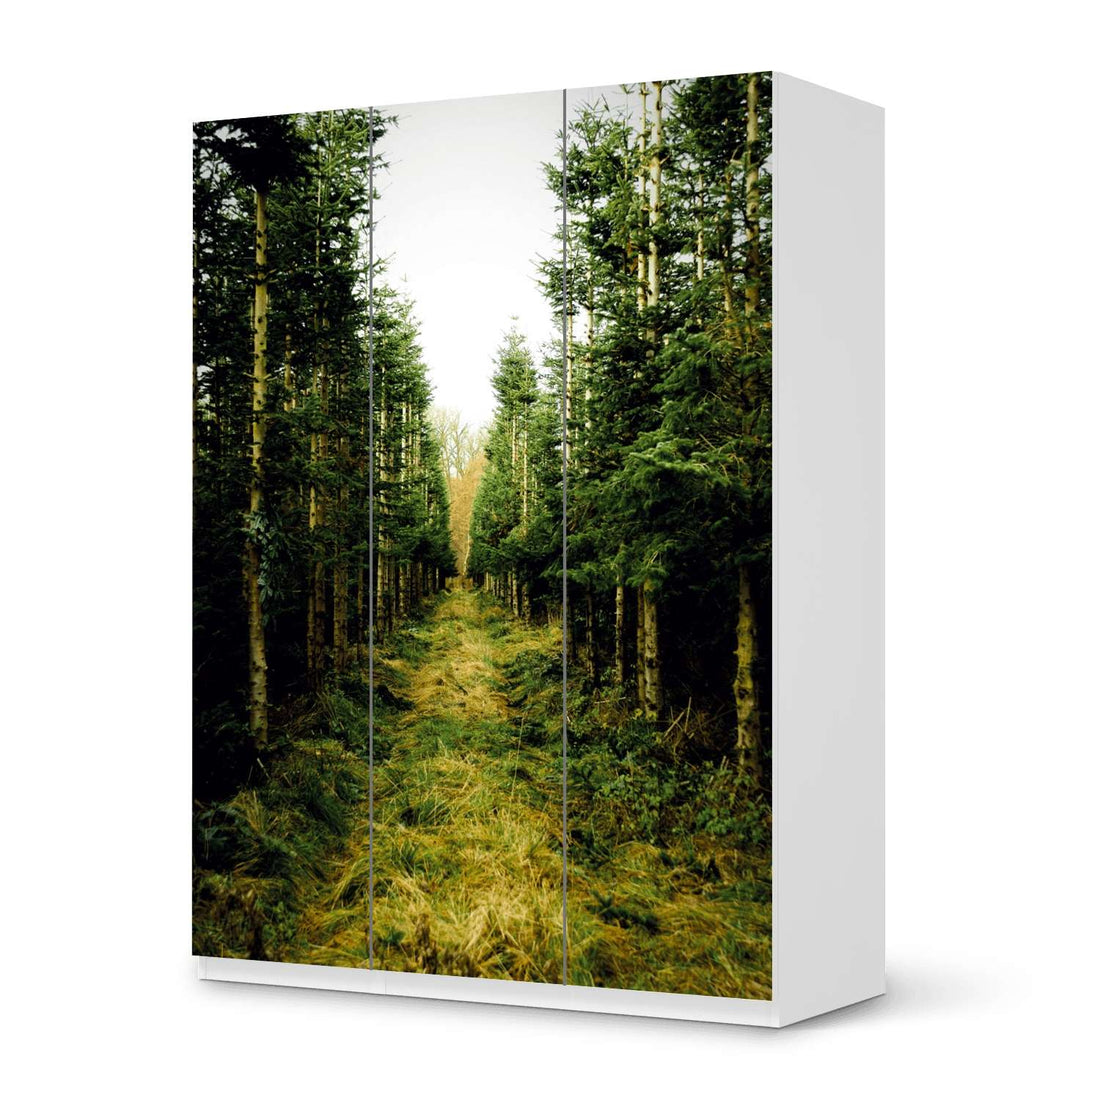 Folie für Möbel Green Alley - IKEA Pax Schrank 201 cm Höhe - 3 Türen - weiss